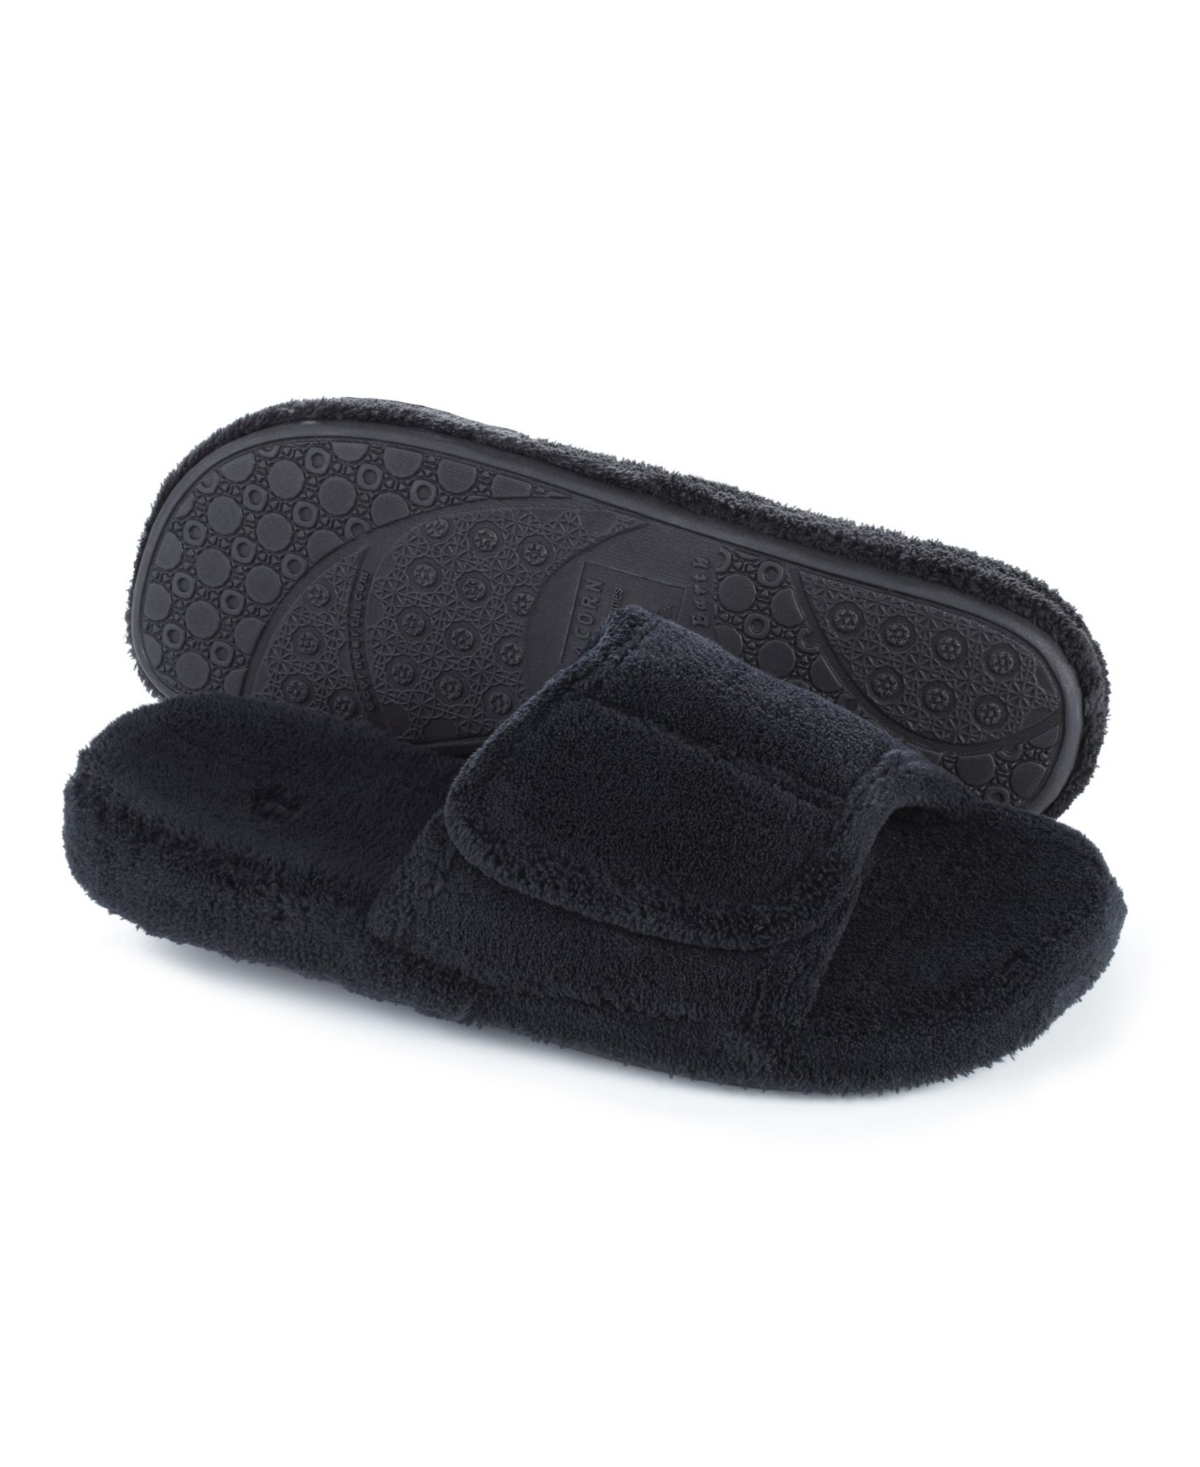 Acorn Men's Spa Slide Comfort Slippers - Black